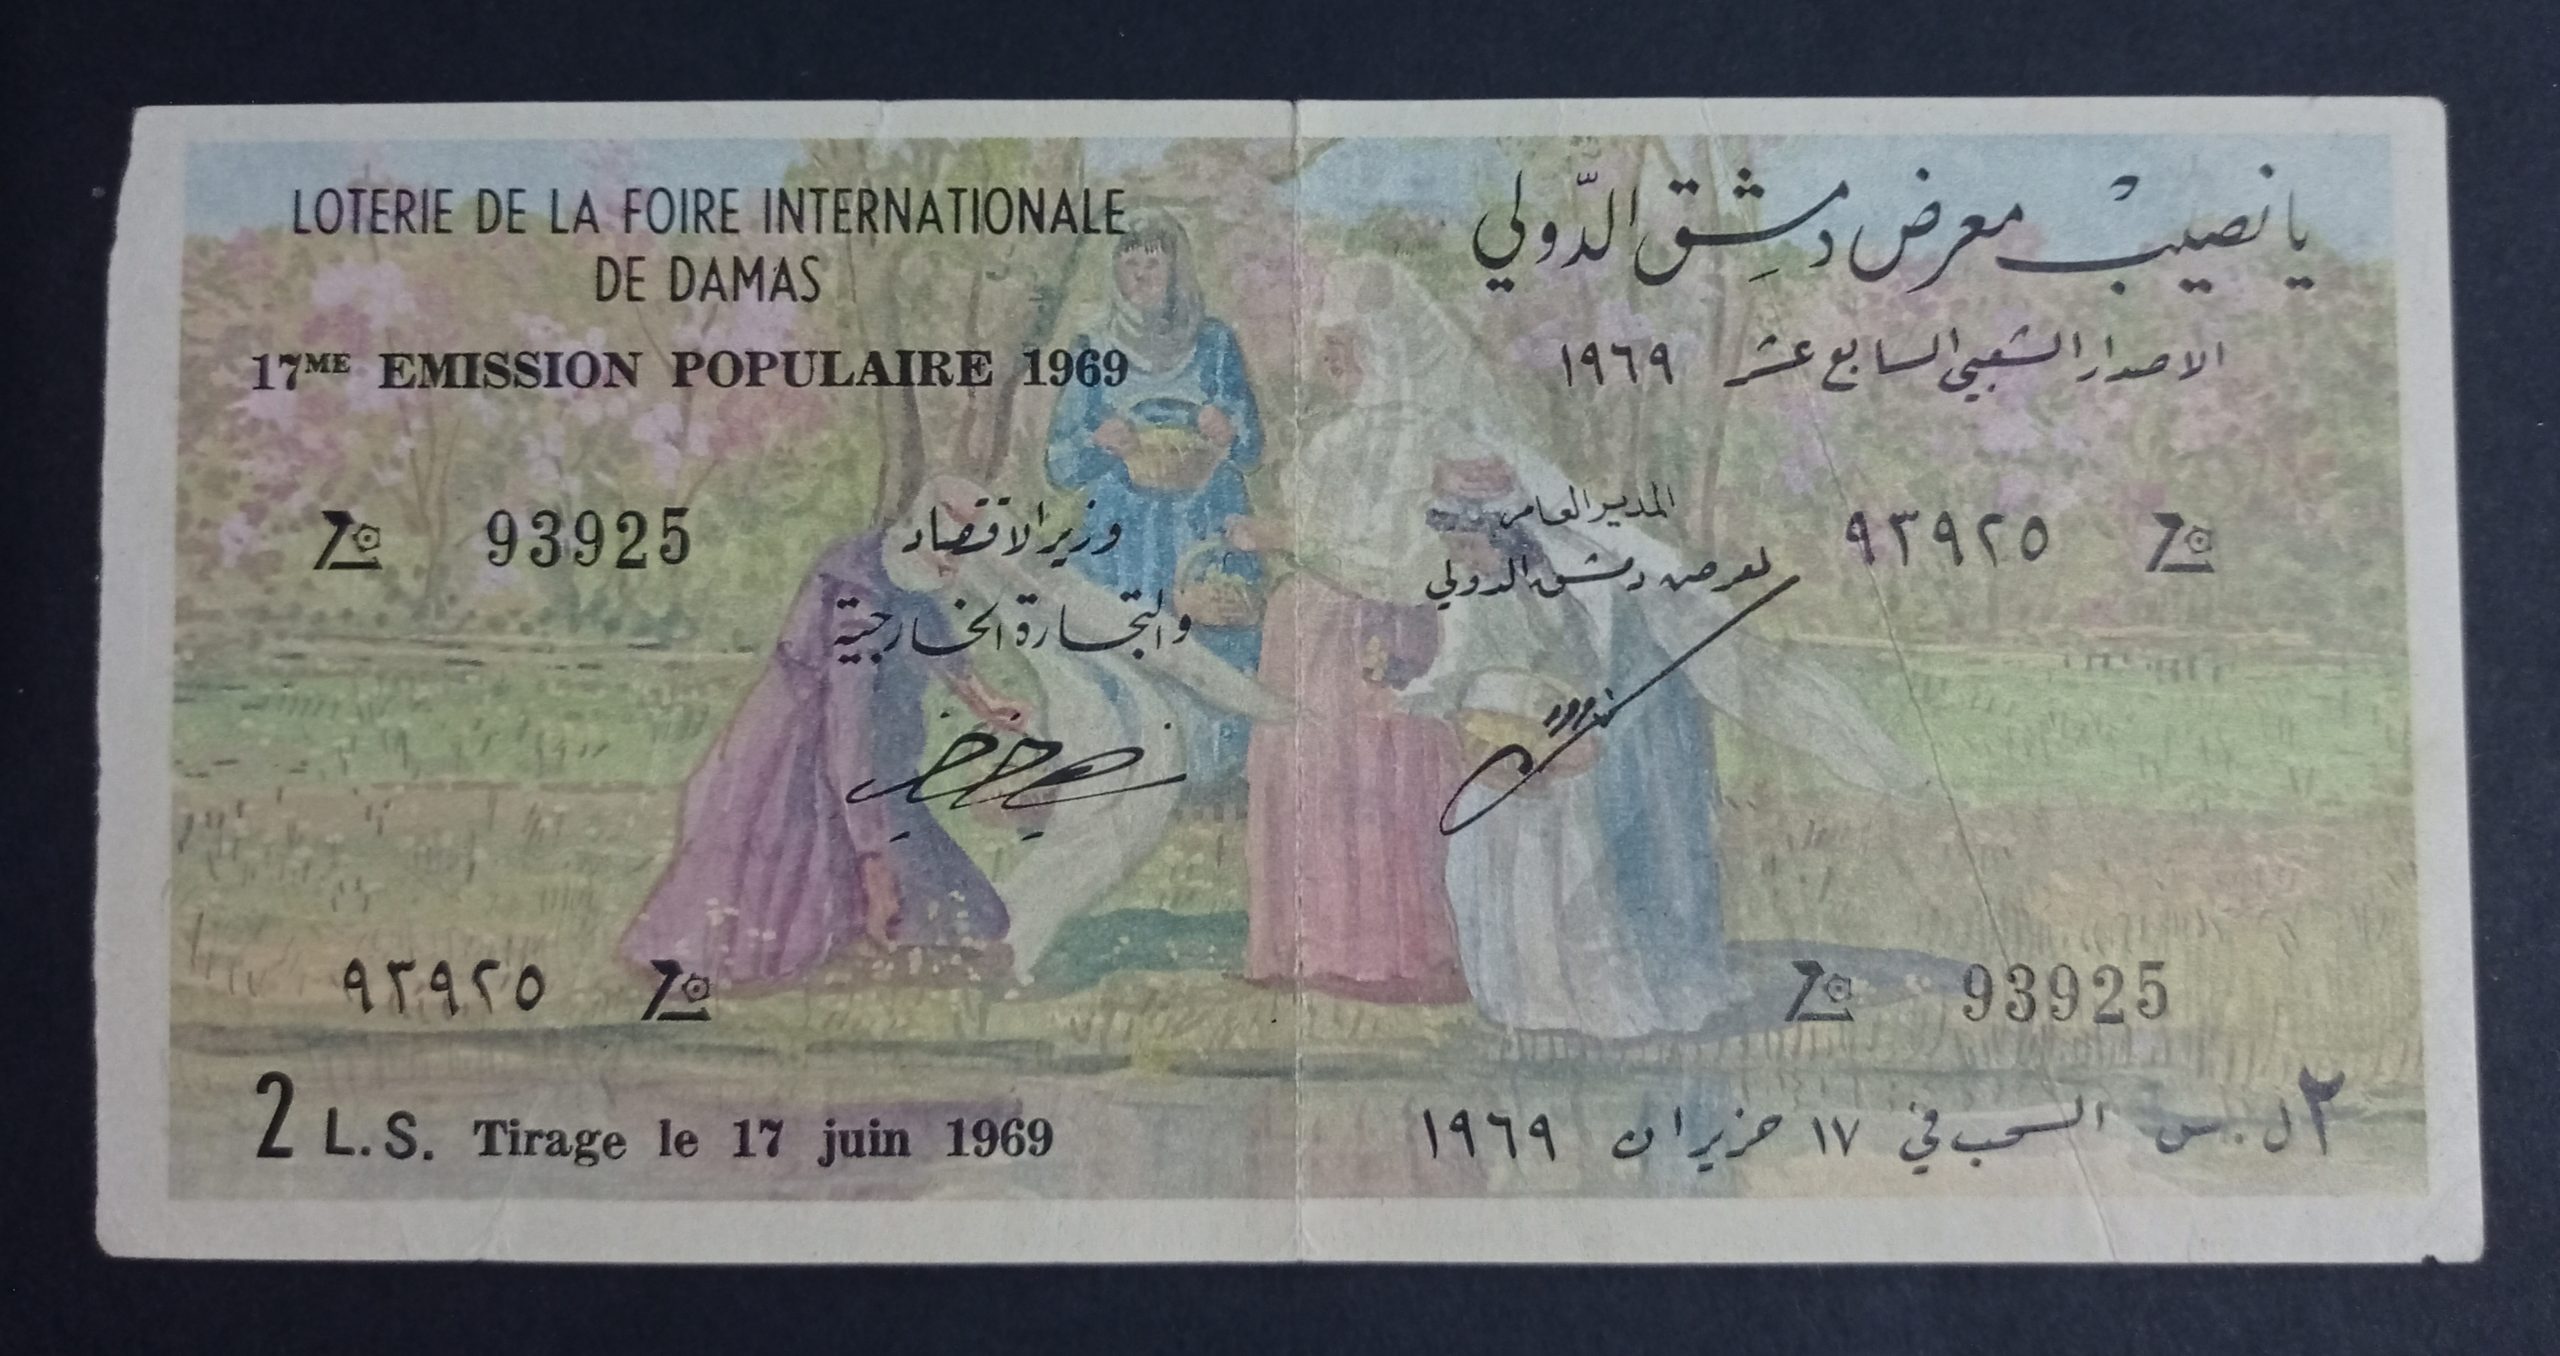 التاريخ السوري المعاصر - يانصيب معرض دمشق الدولي - الإصدار الشعبي السابع عشر عام 1969